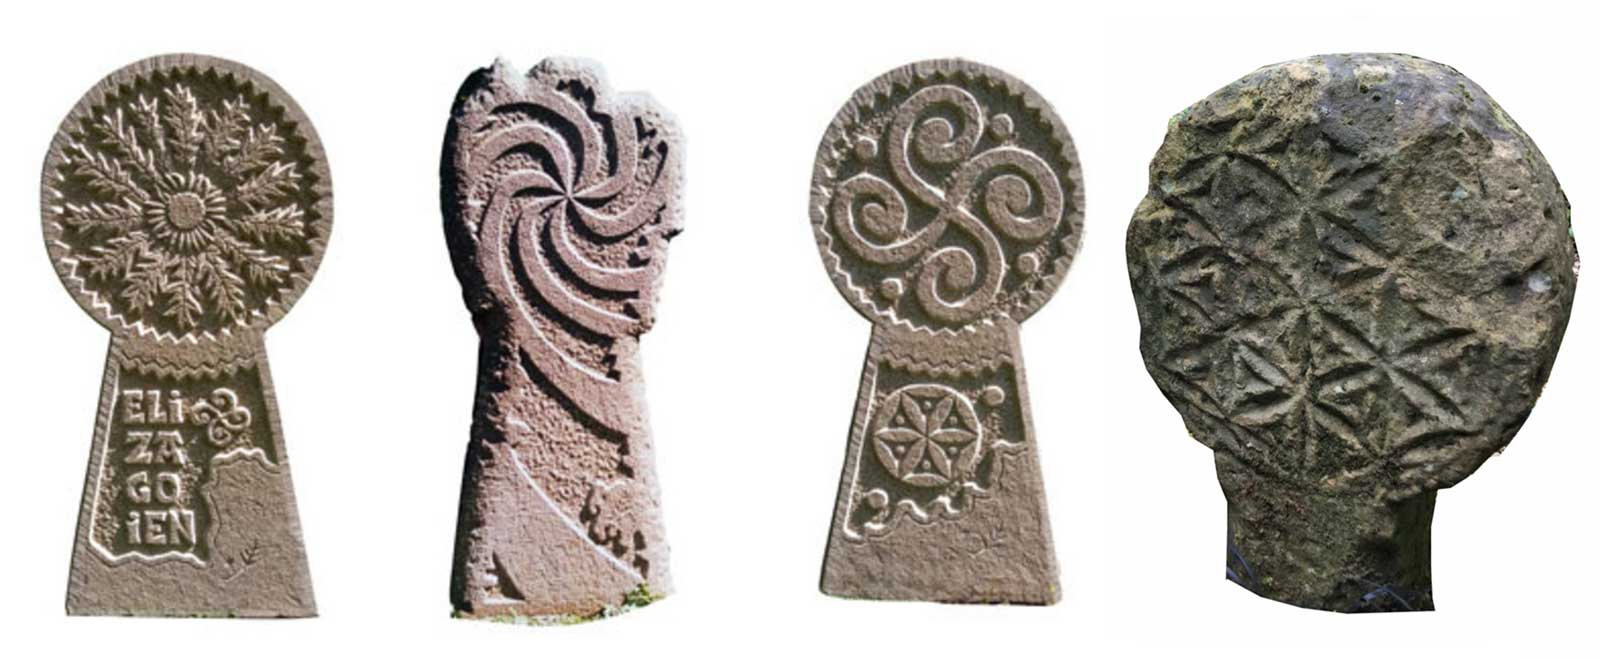 Algunos ejemplos de estelas discoidales vascas con motivos simbólicos.